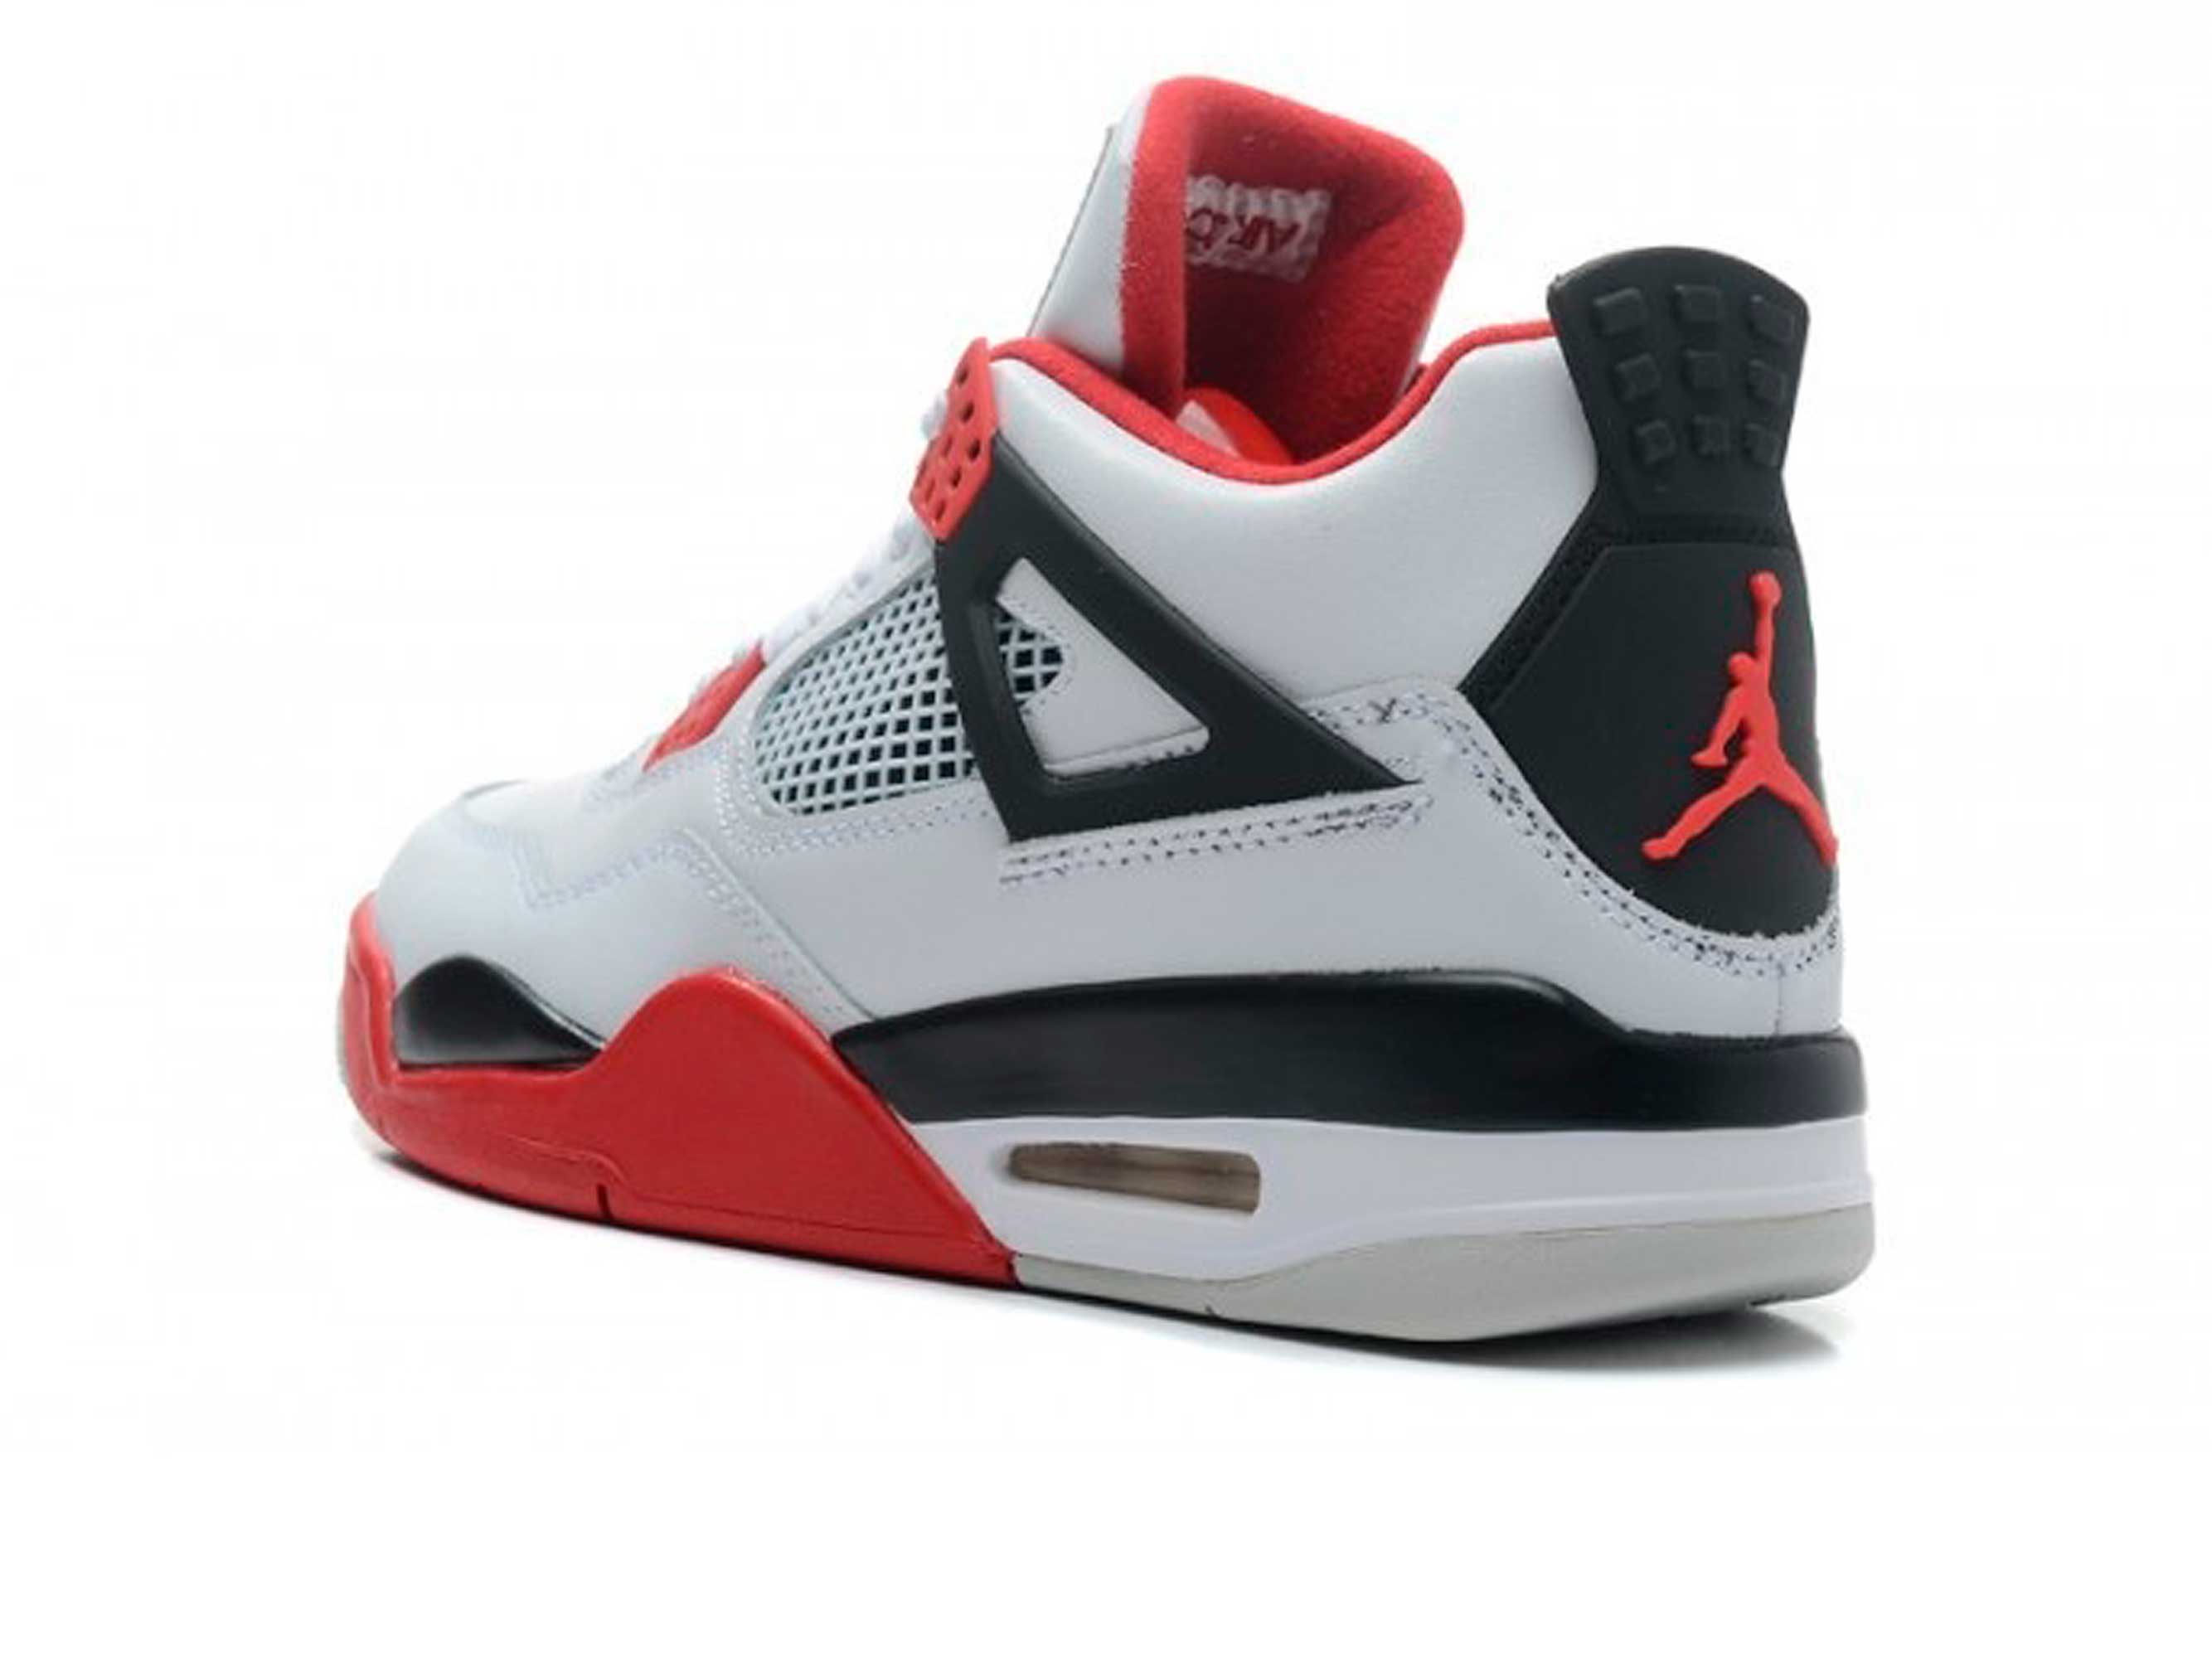 Nike jordan 4 red. Nike Air Jordan 4 Fire Red. Nike Air Jordan 4 Retro Fire Red. Nike Air Jordan 4 Retro White Red. Nike Air Jordan IV 4 Retro Fire Red.